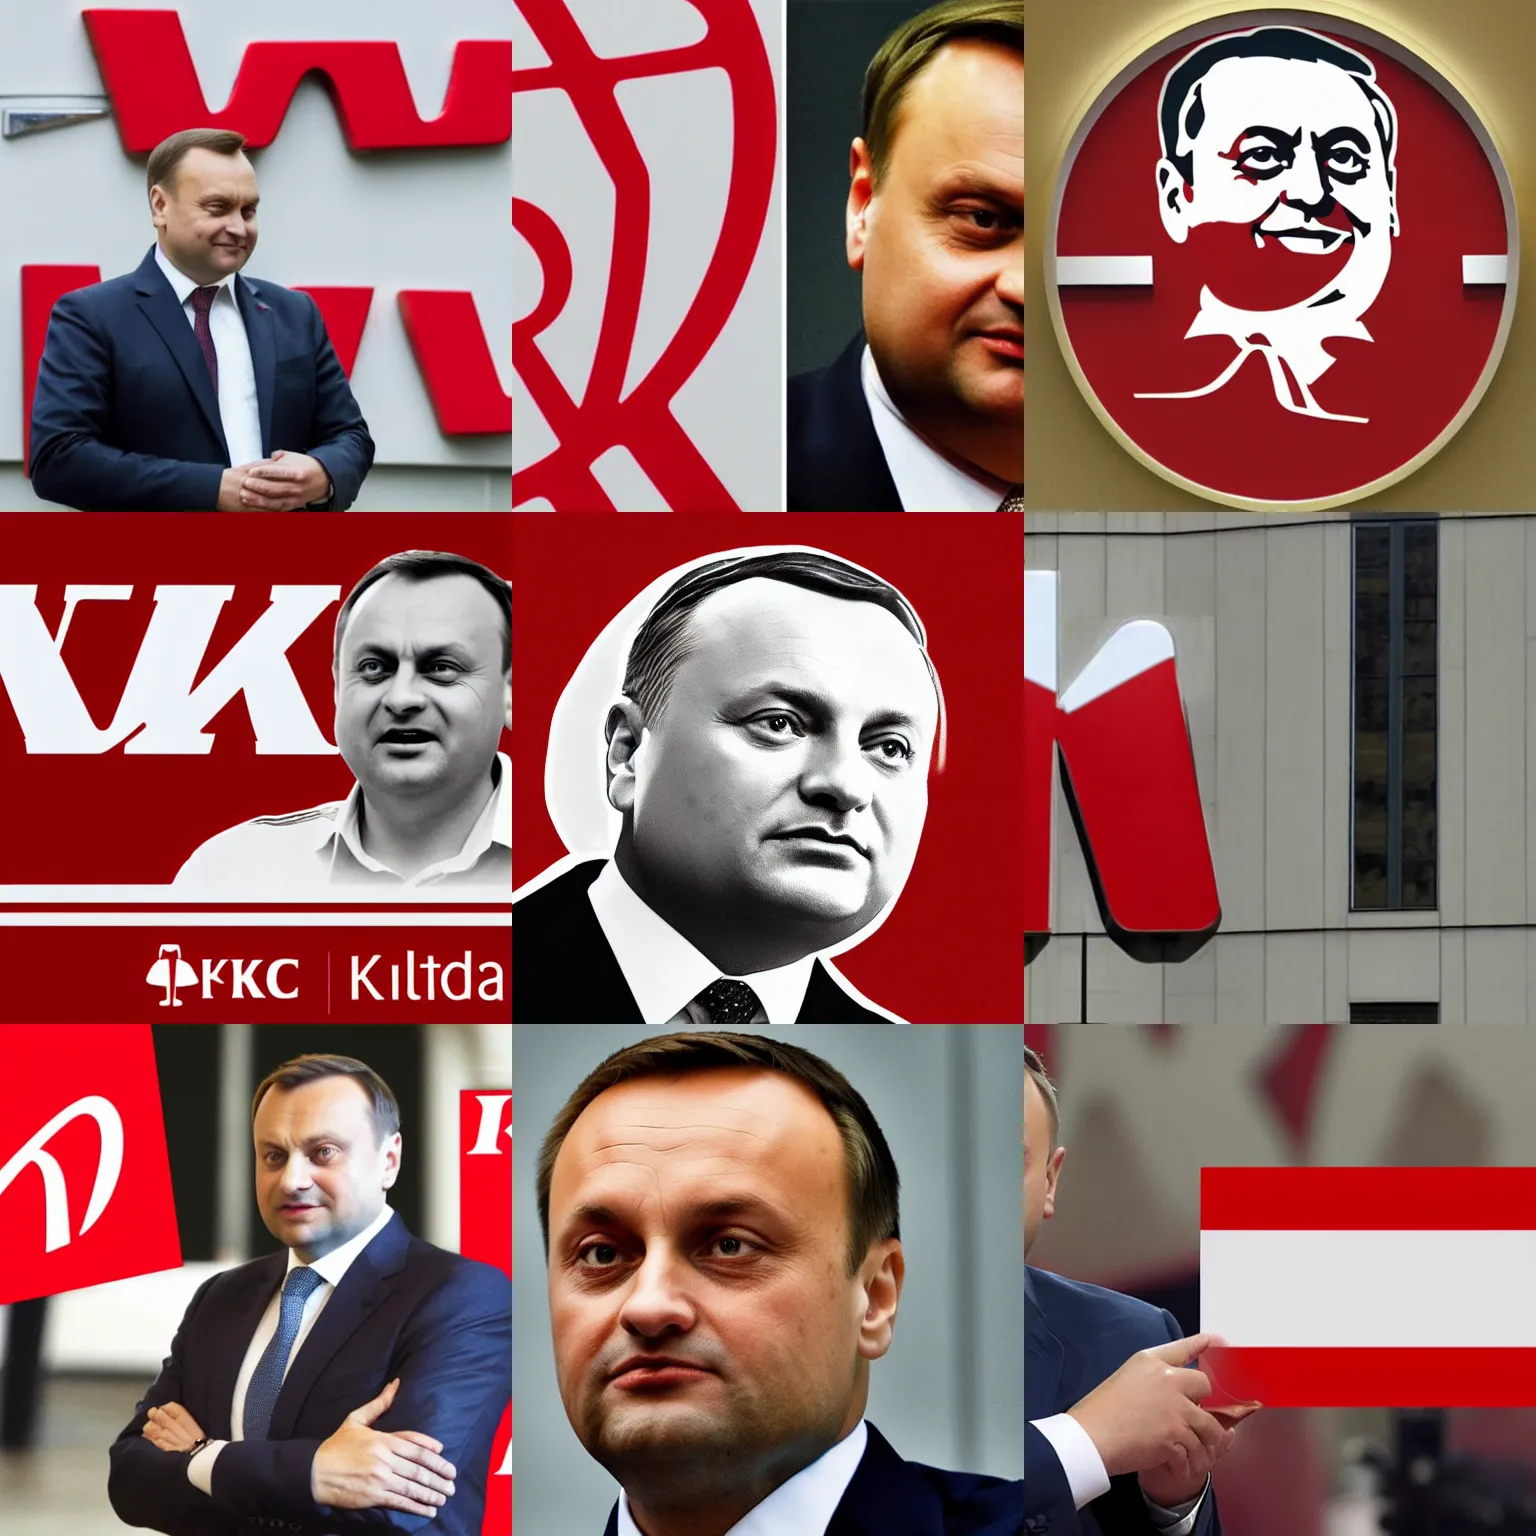 Prompt: Andrzej Duda in KFC logo